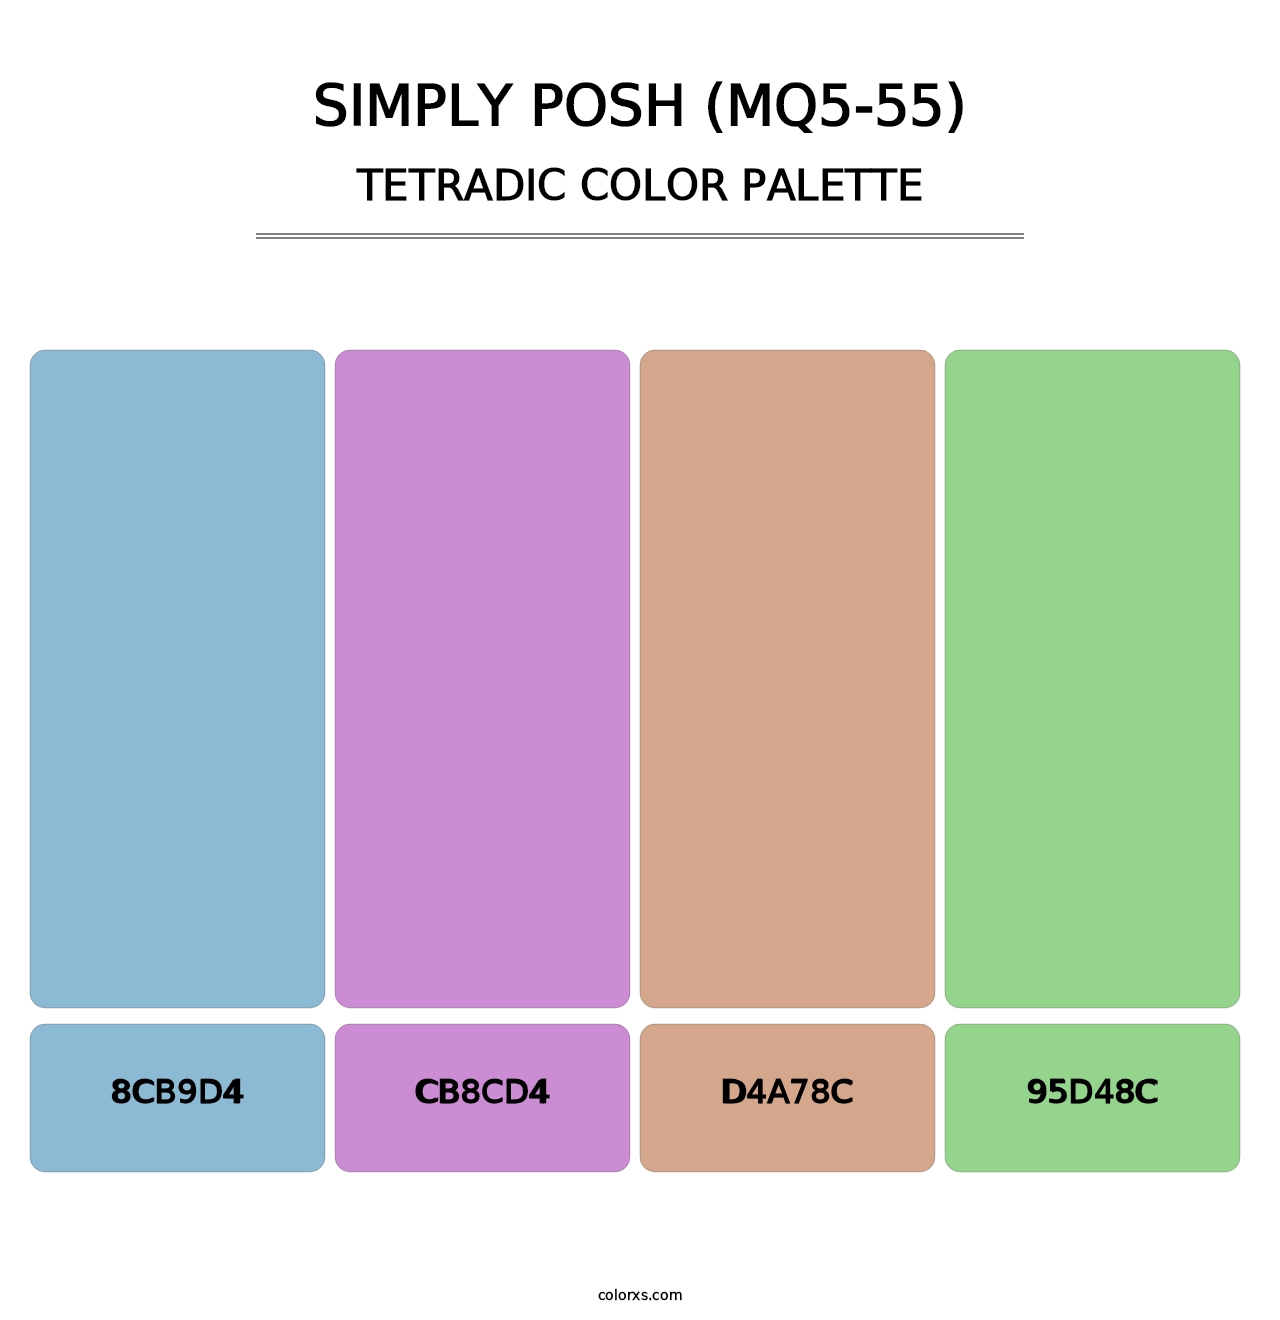 Simply Posh (MQ5-55) - Tetradic Color Palette